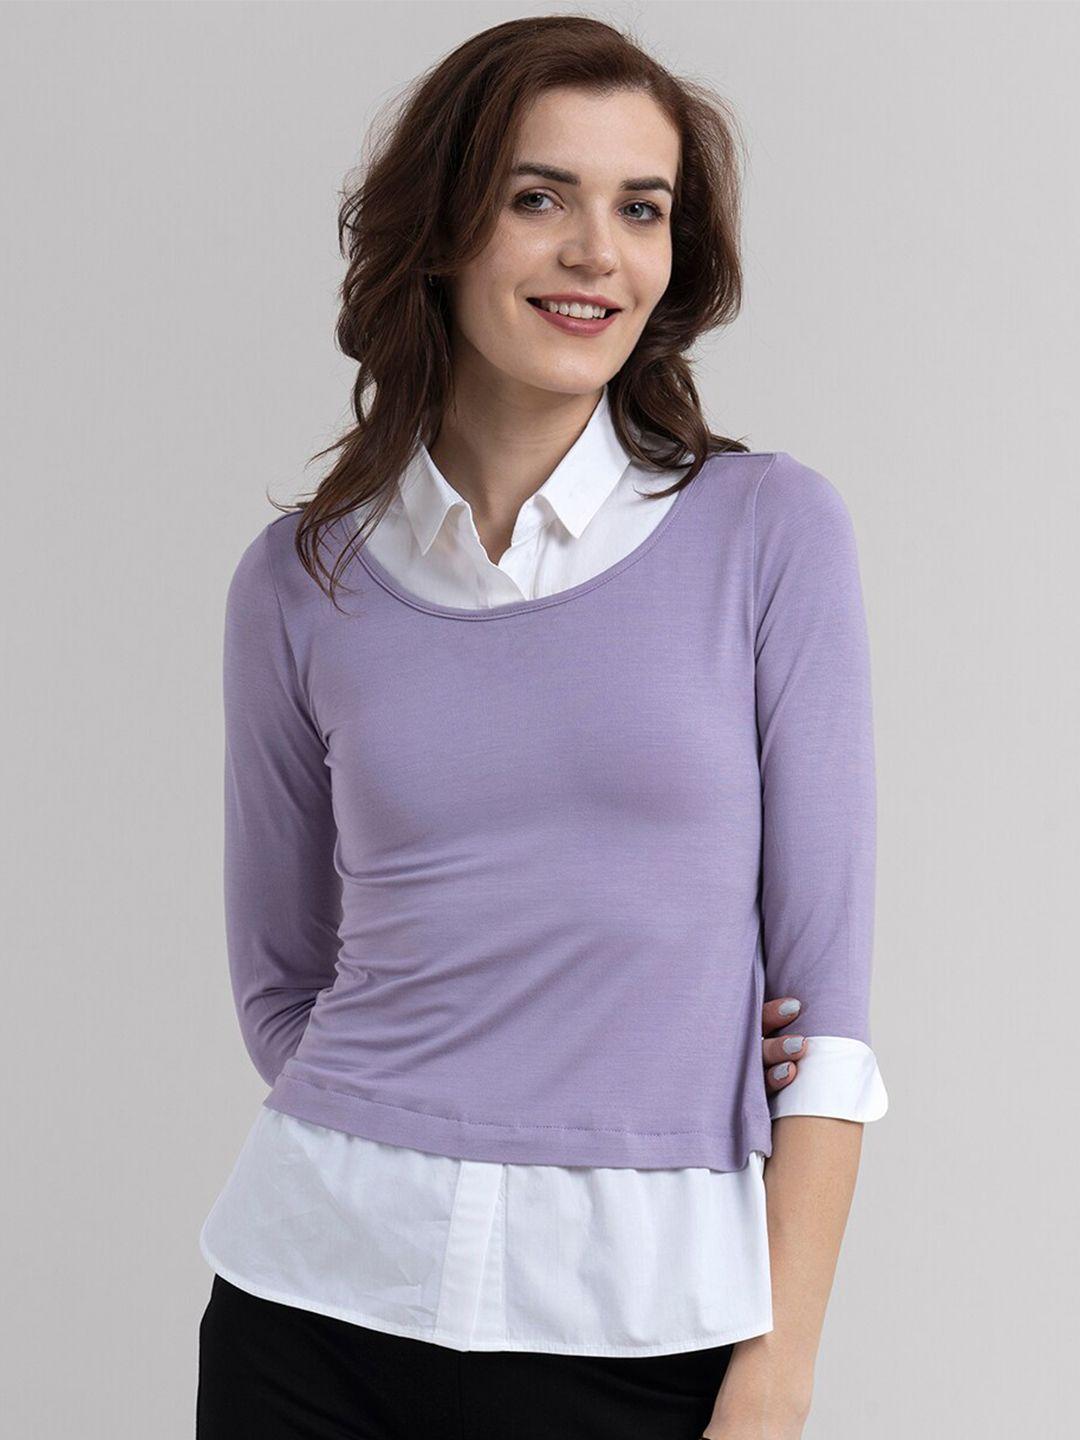 fablestreet women purple colourblocked top